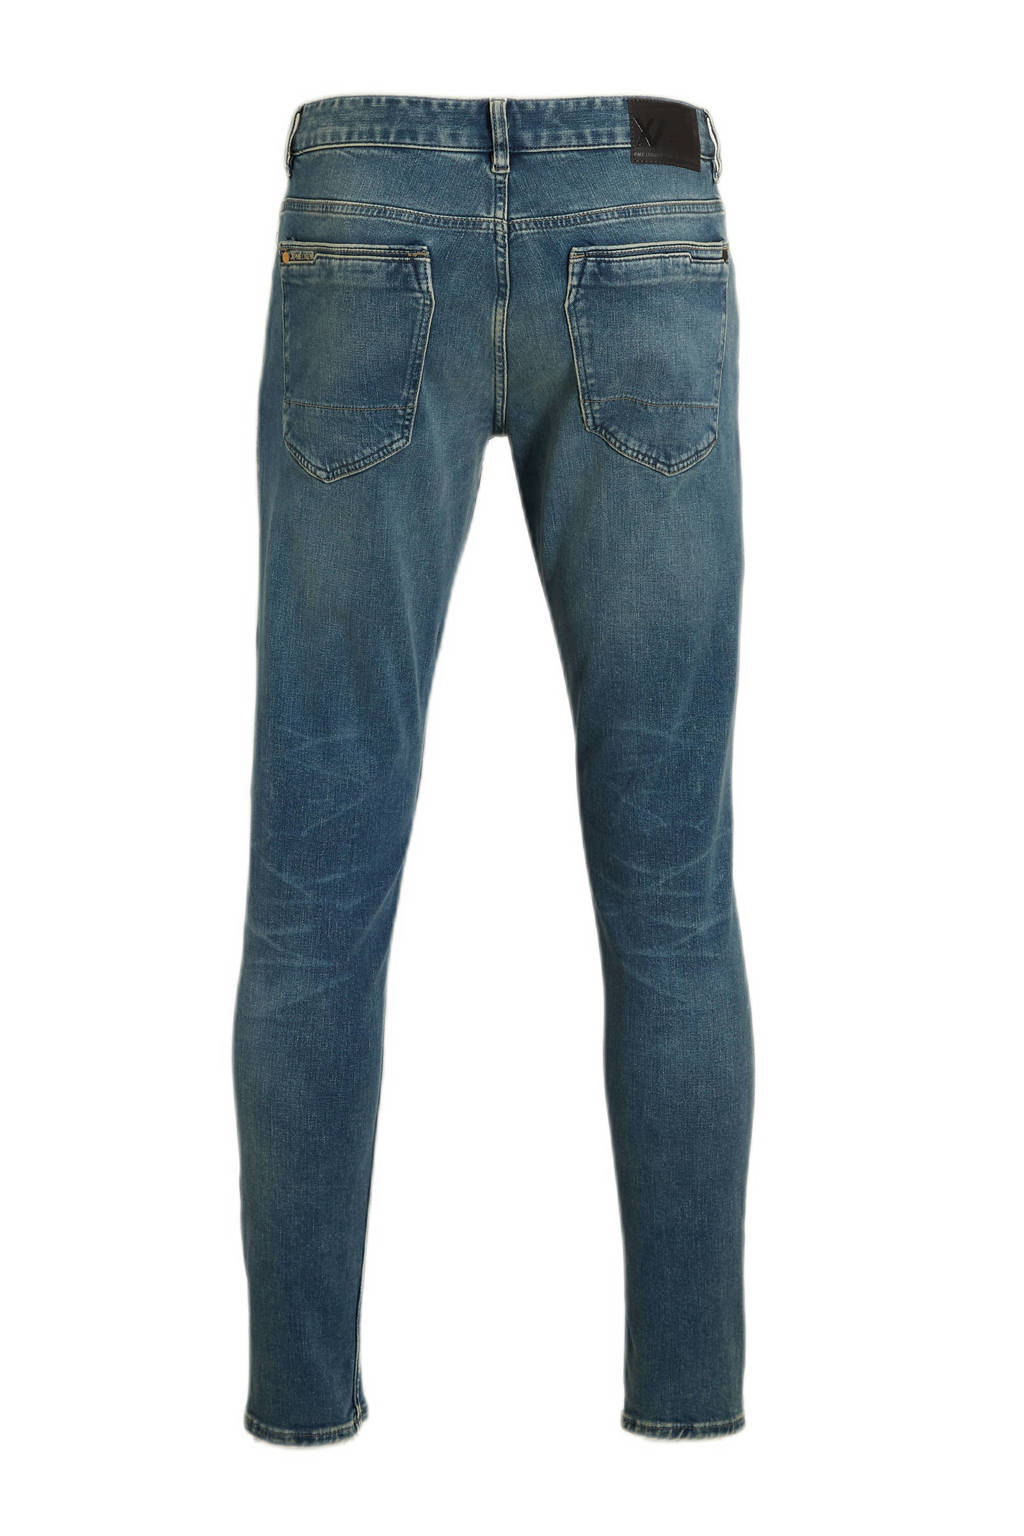 XV sky Legend River jeans PME wash | Union dirt slim fit